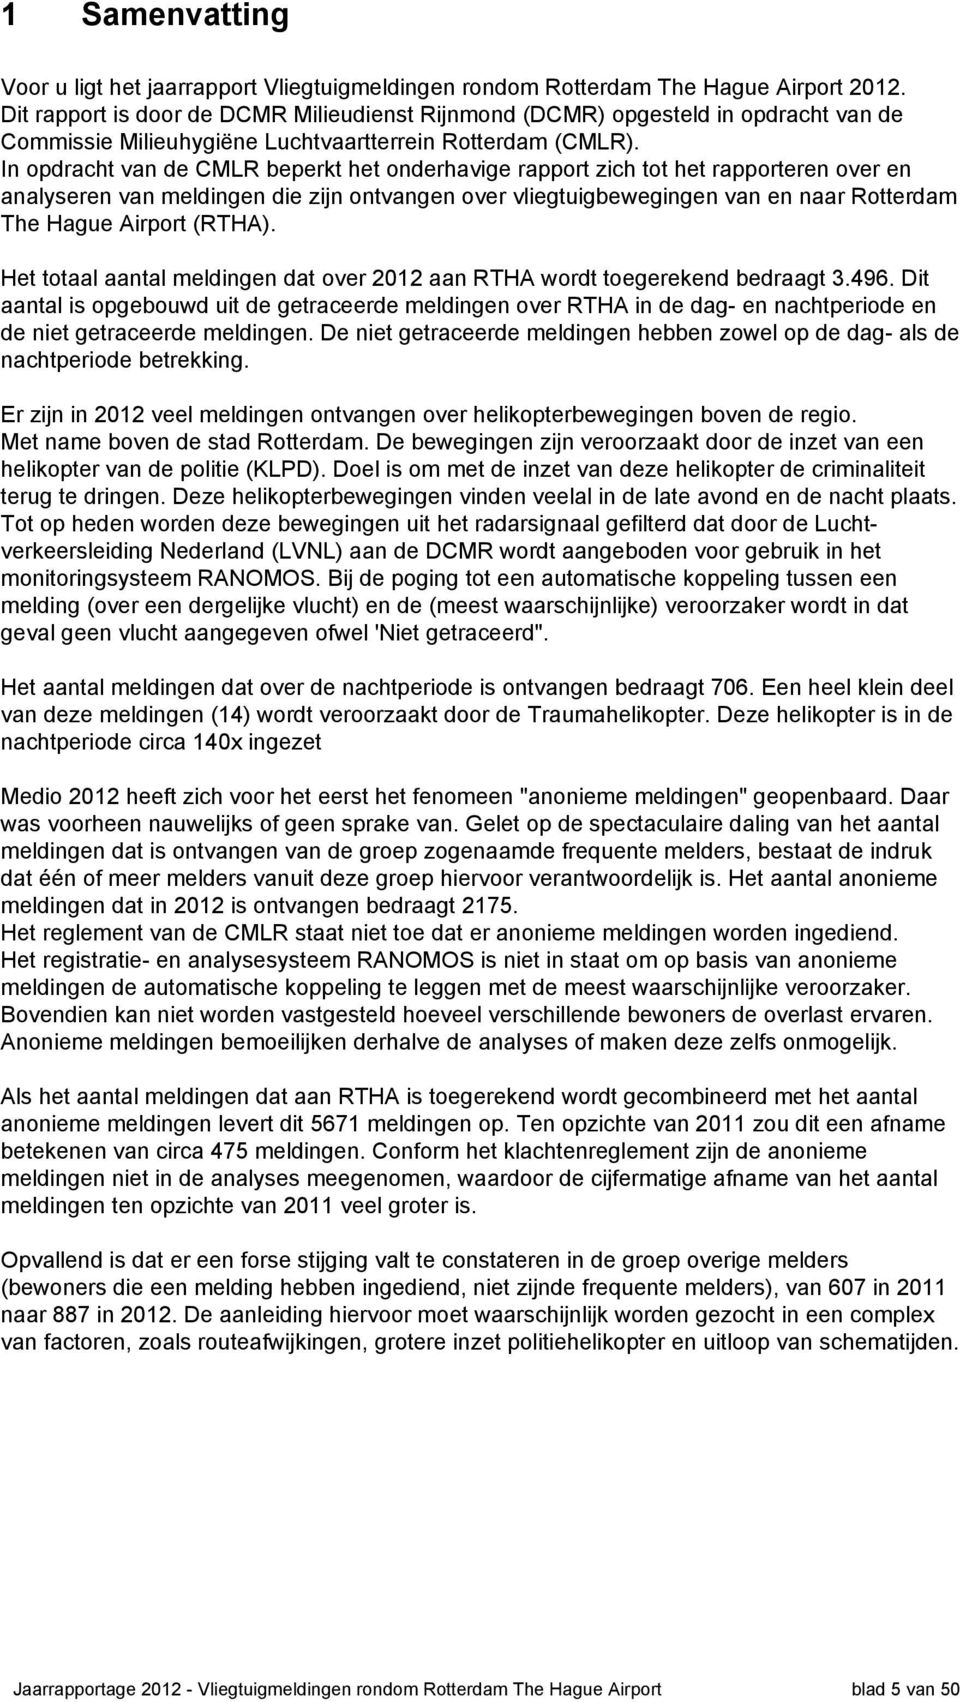 In opdracht van de CMLR beperkt het onderhavige rapport zich tot het rapporteren over en analyseren van meldingen die zijn ontvangen over vliegtuigbewegingen van en naar Rotterdam The Hague Airport